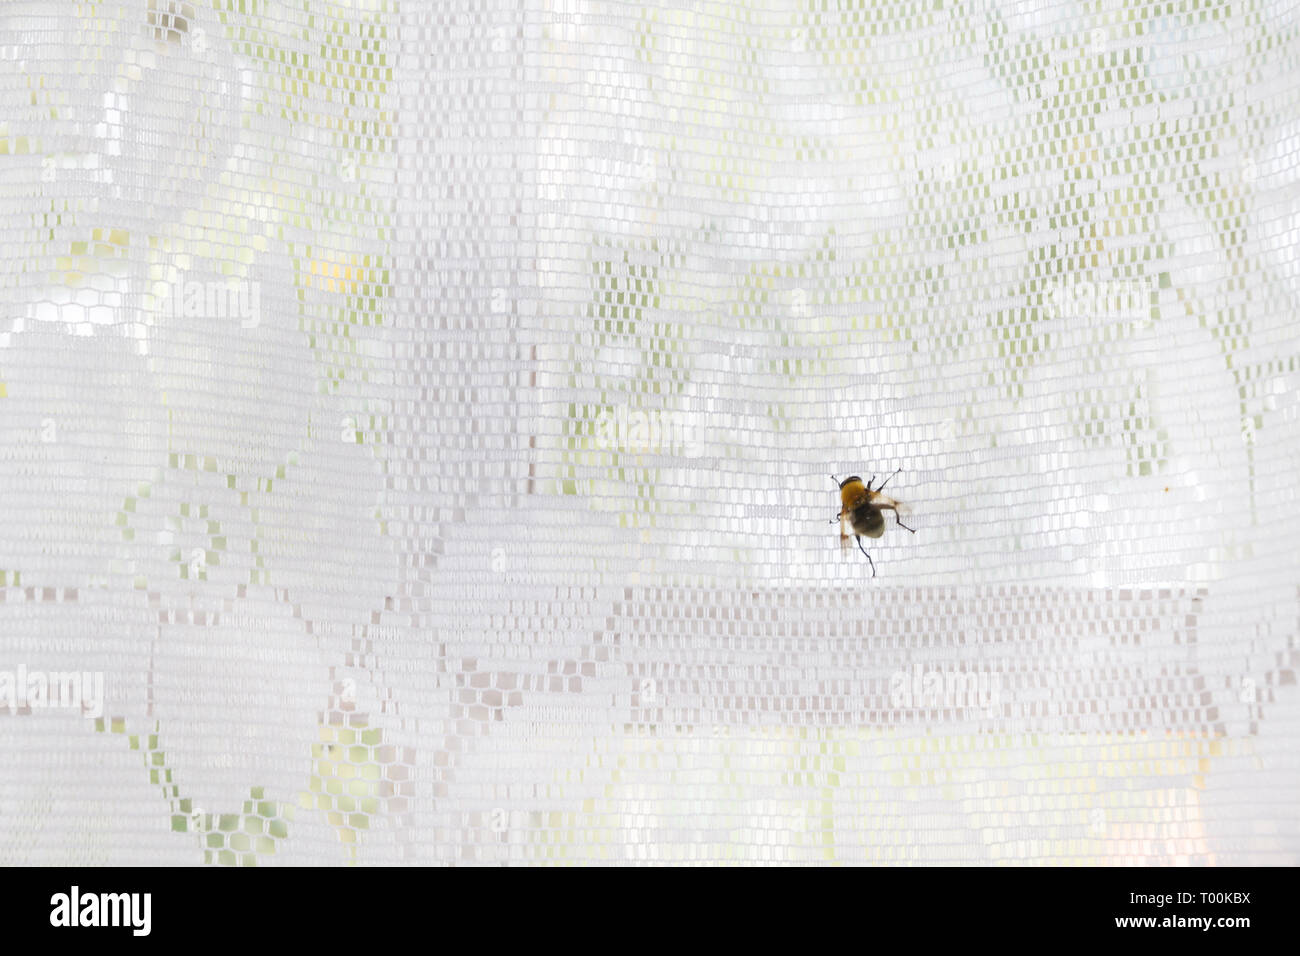 Une mouche se trouve sur un rideau blanc sur la fenêtre Banque D'Images